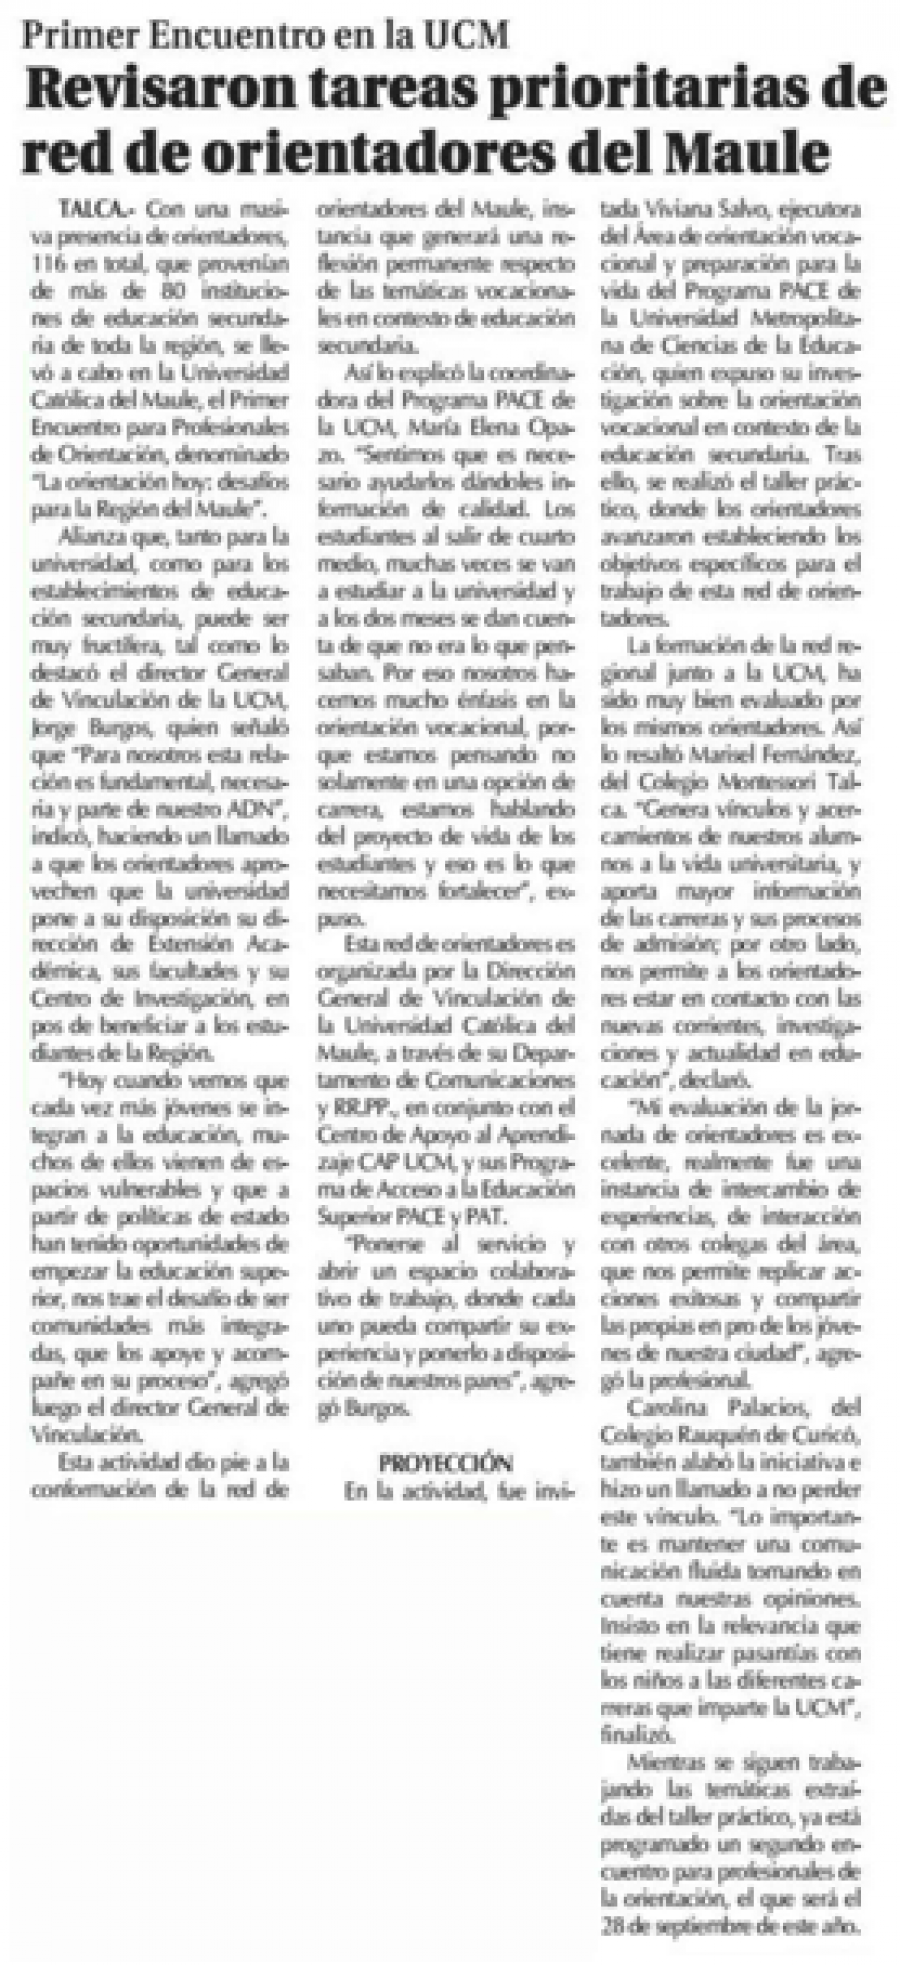 03 de junio en Diario El Centro: ” Revisaron tareas prioritarias de red de orientadores del Maule”